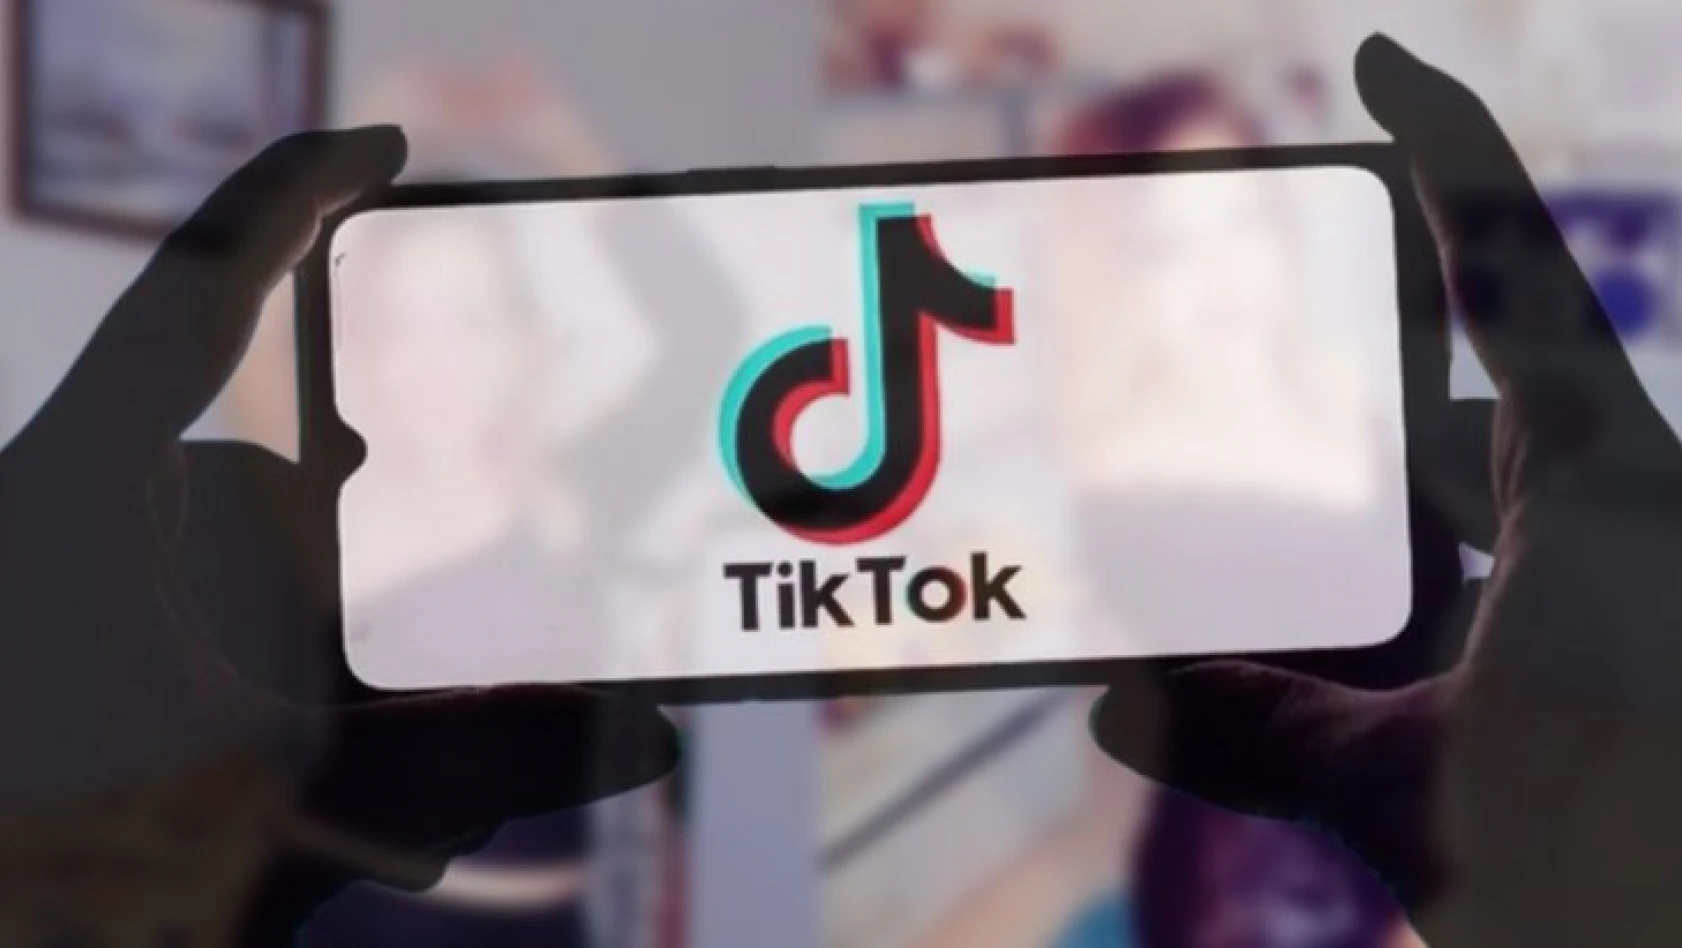 TikTok ekran süresi yönetimi için yeniliklerini duyurdu